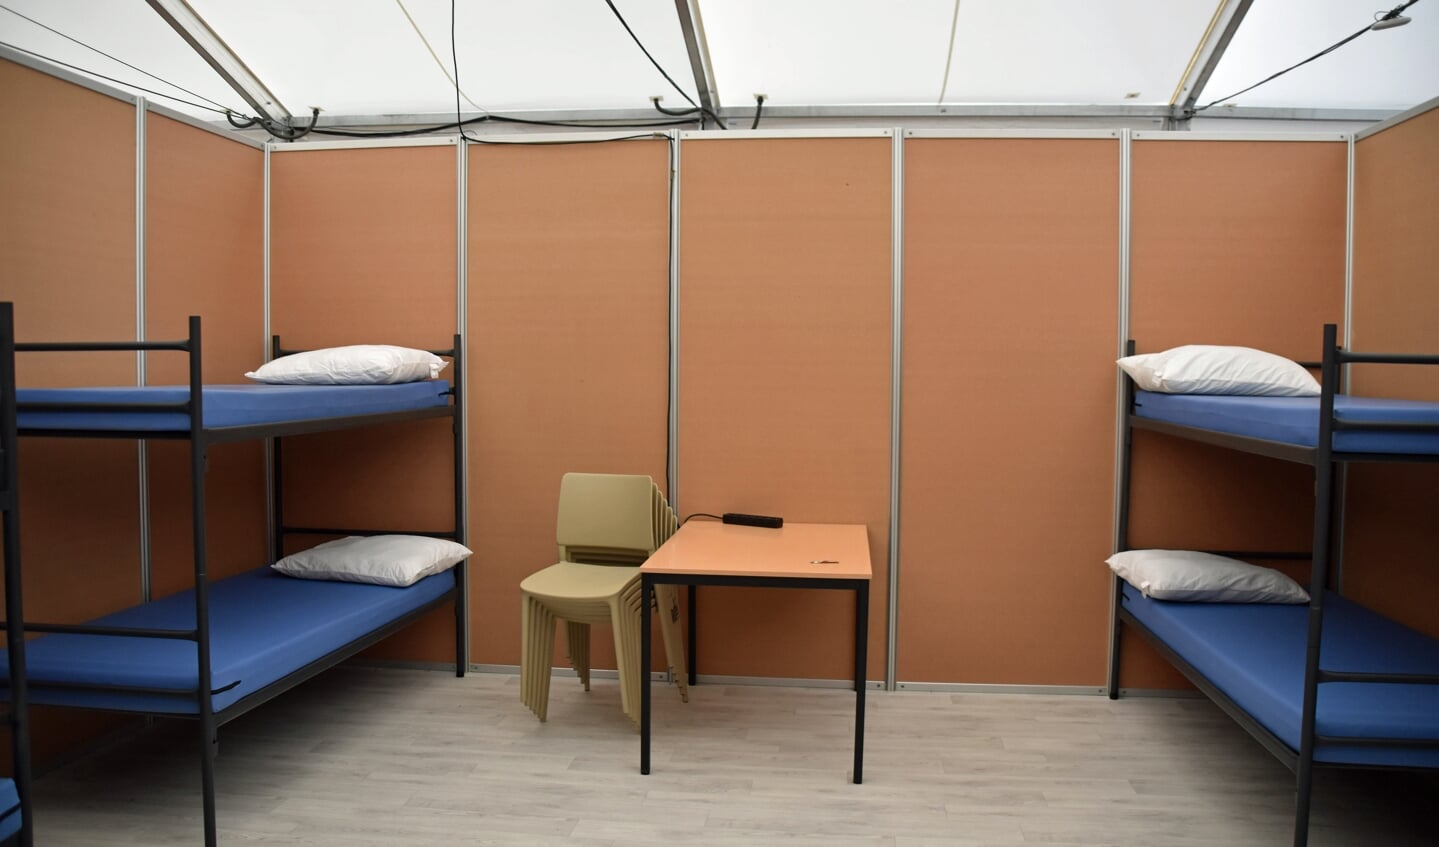 De noodopvang voor vluchtelingen in Kamp van Zeist werd in januari dit jaar ingericht.